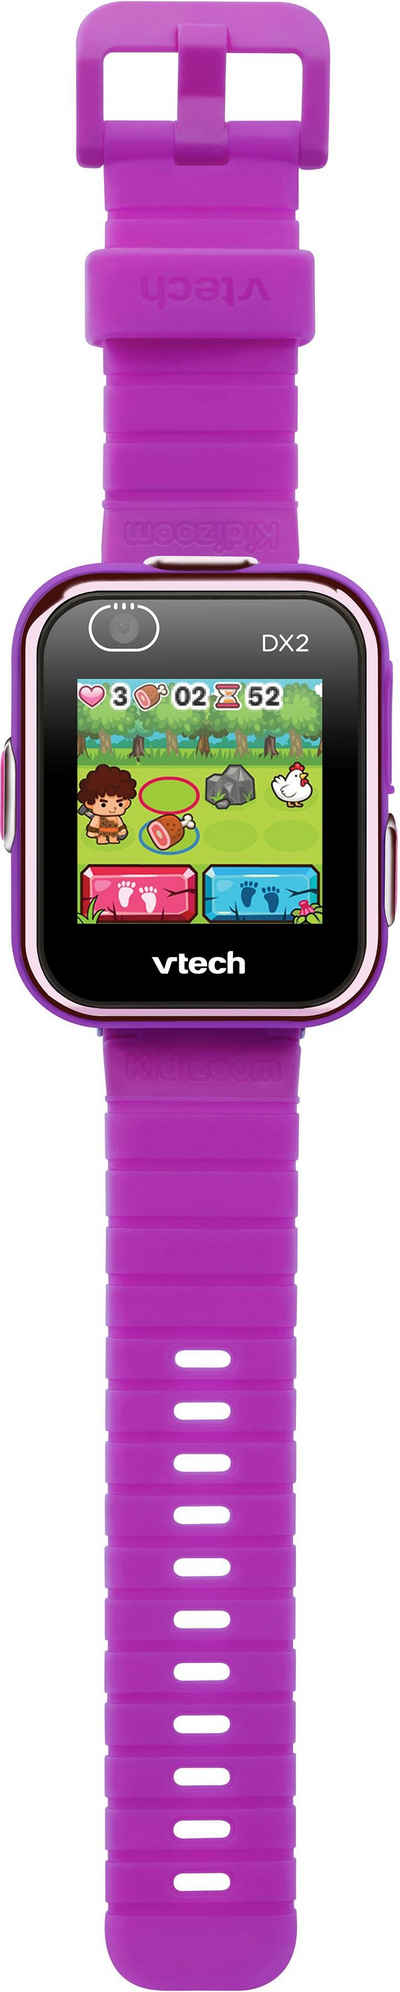 Vtech® Lernspielzeug »Kidizoom Smart Watch DX2«, mit Kamerafunktion